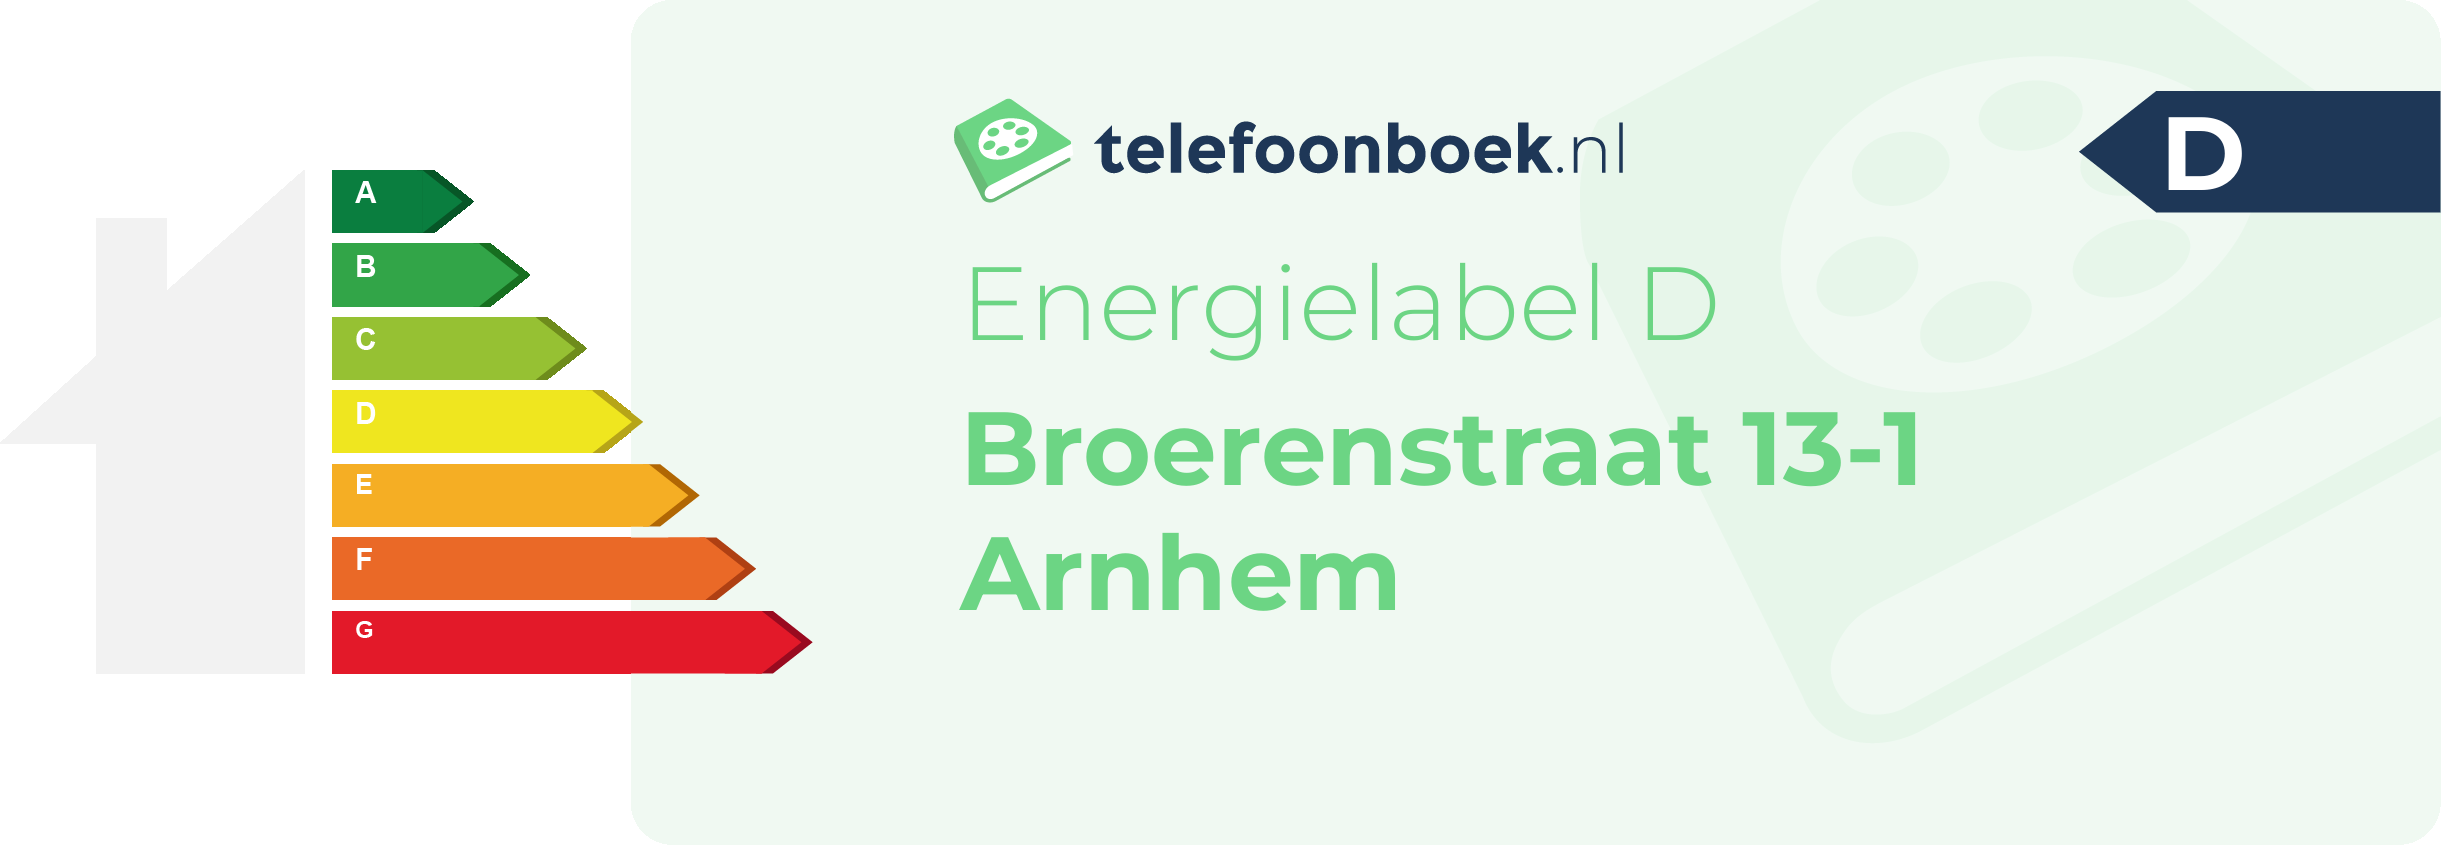 Energielabel Broerenstraat 13-1 Arnhem